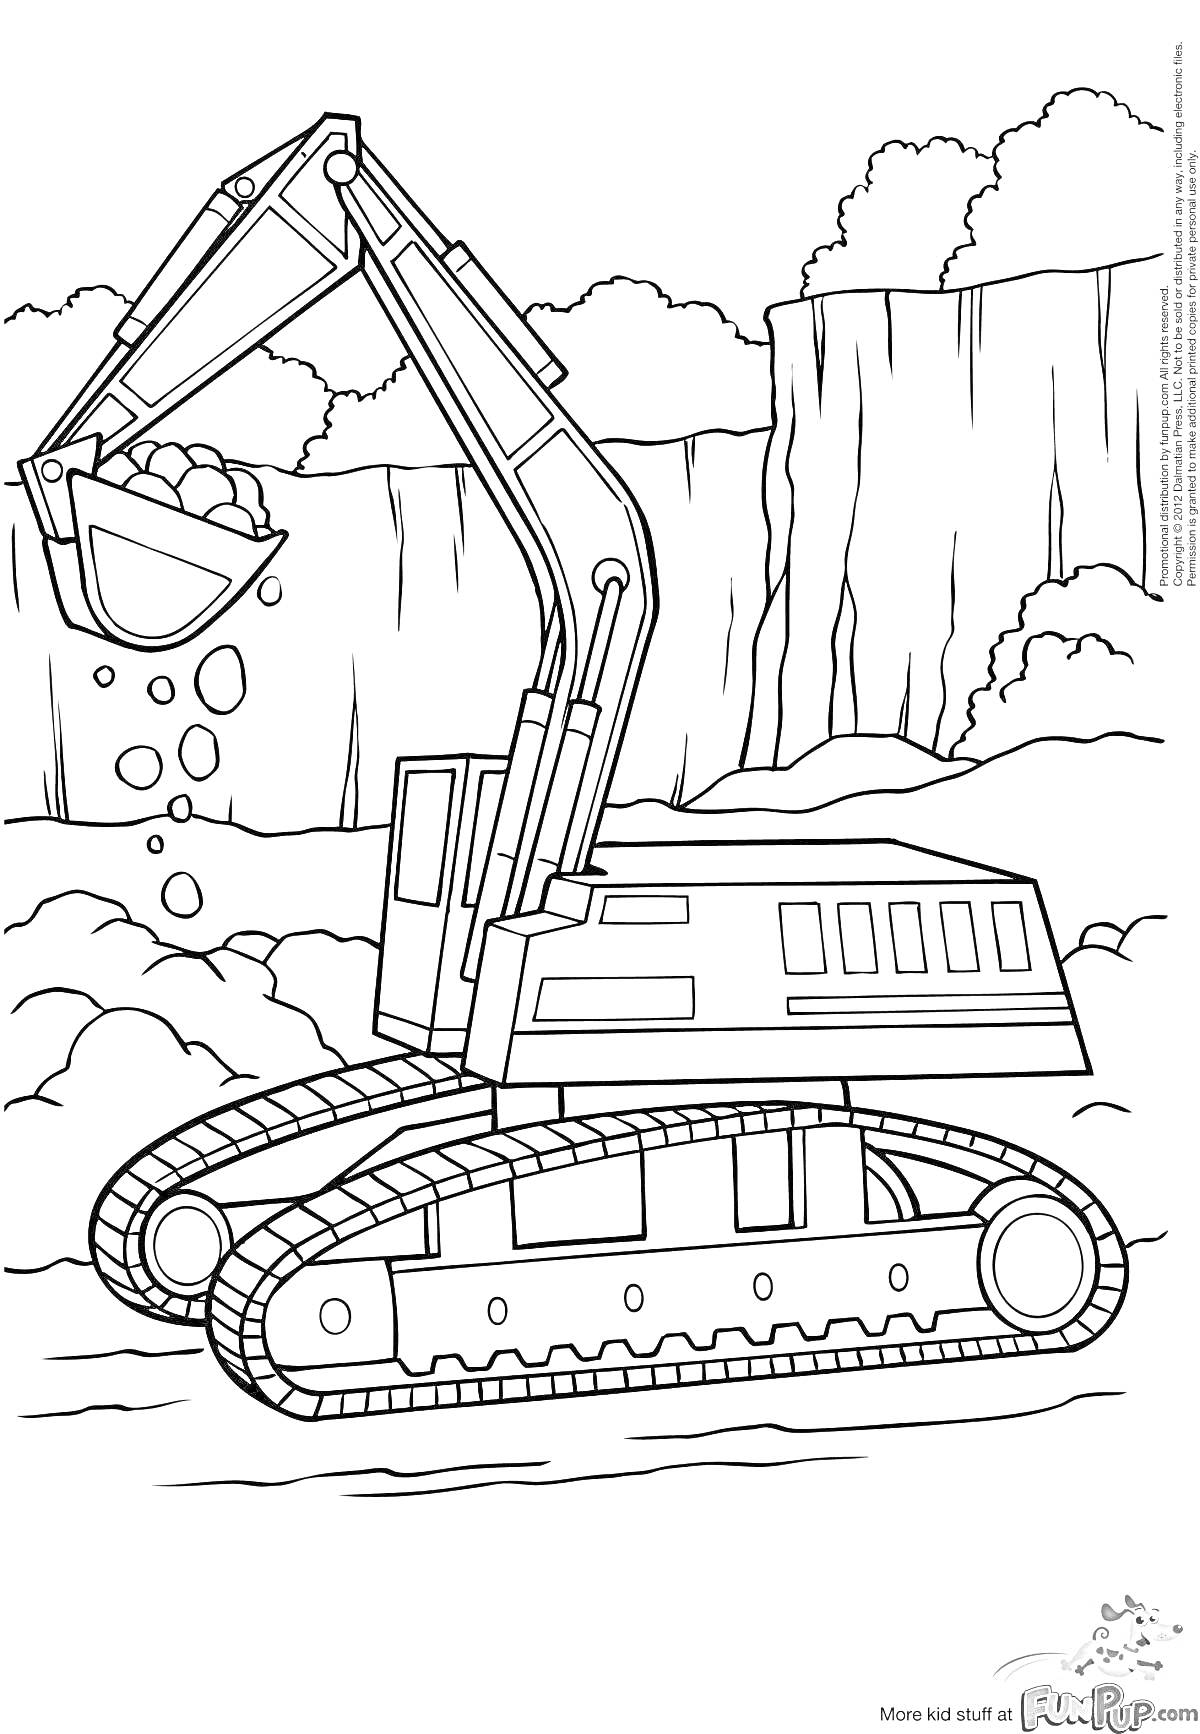 Раскраска Экскаватор на гусеничном ходу с ковшом, работающий возле скал и гор